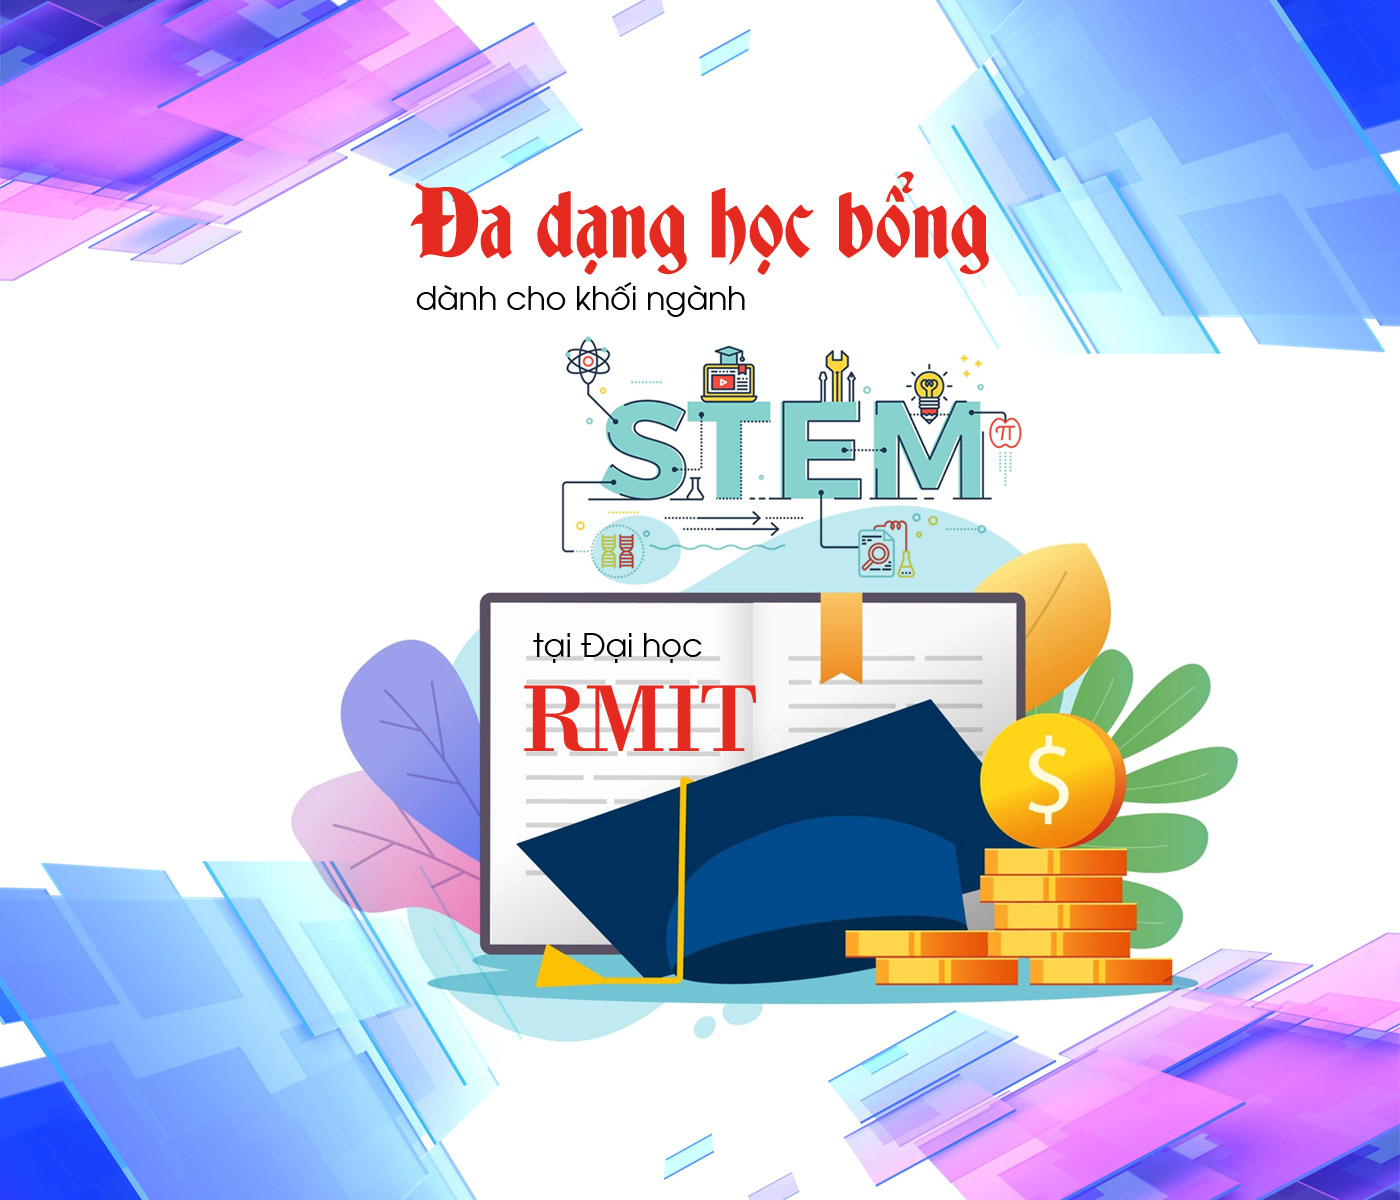 Đa dạng học bổng dành cho khối ngành STEM tại Đại học RMIT - Ảnh 1